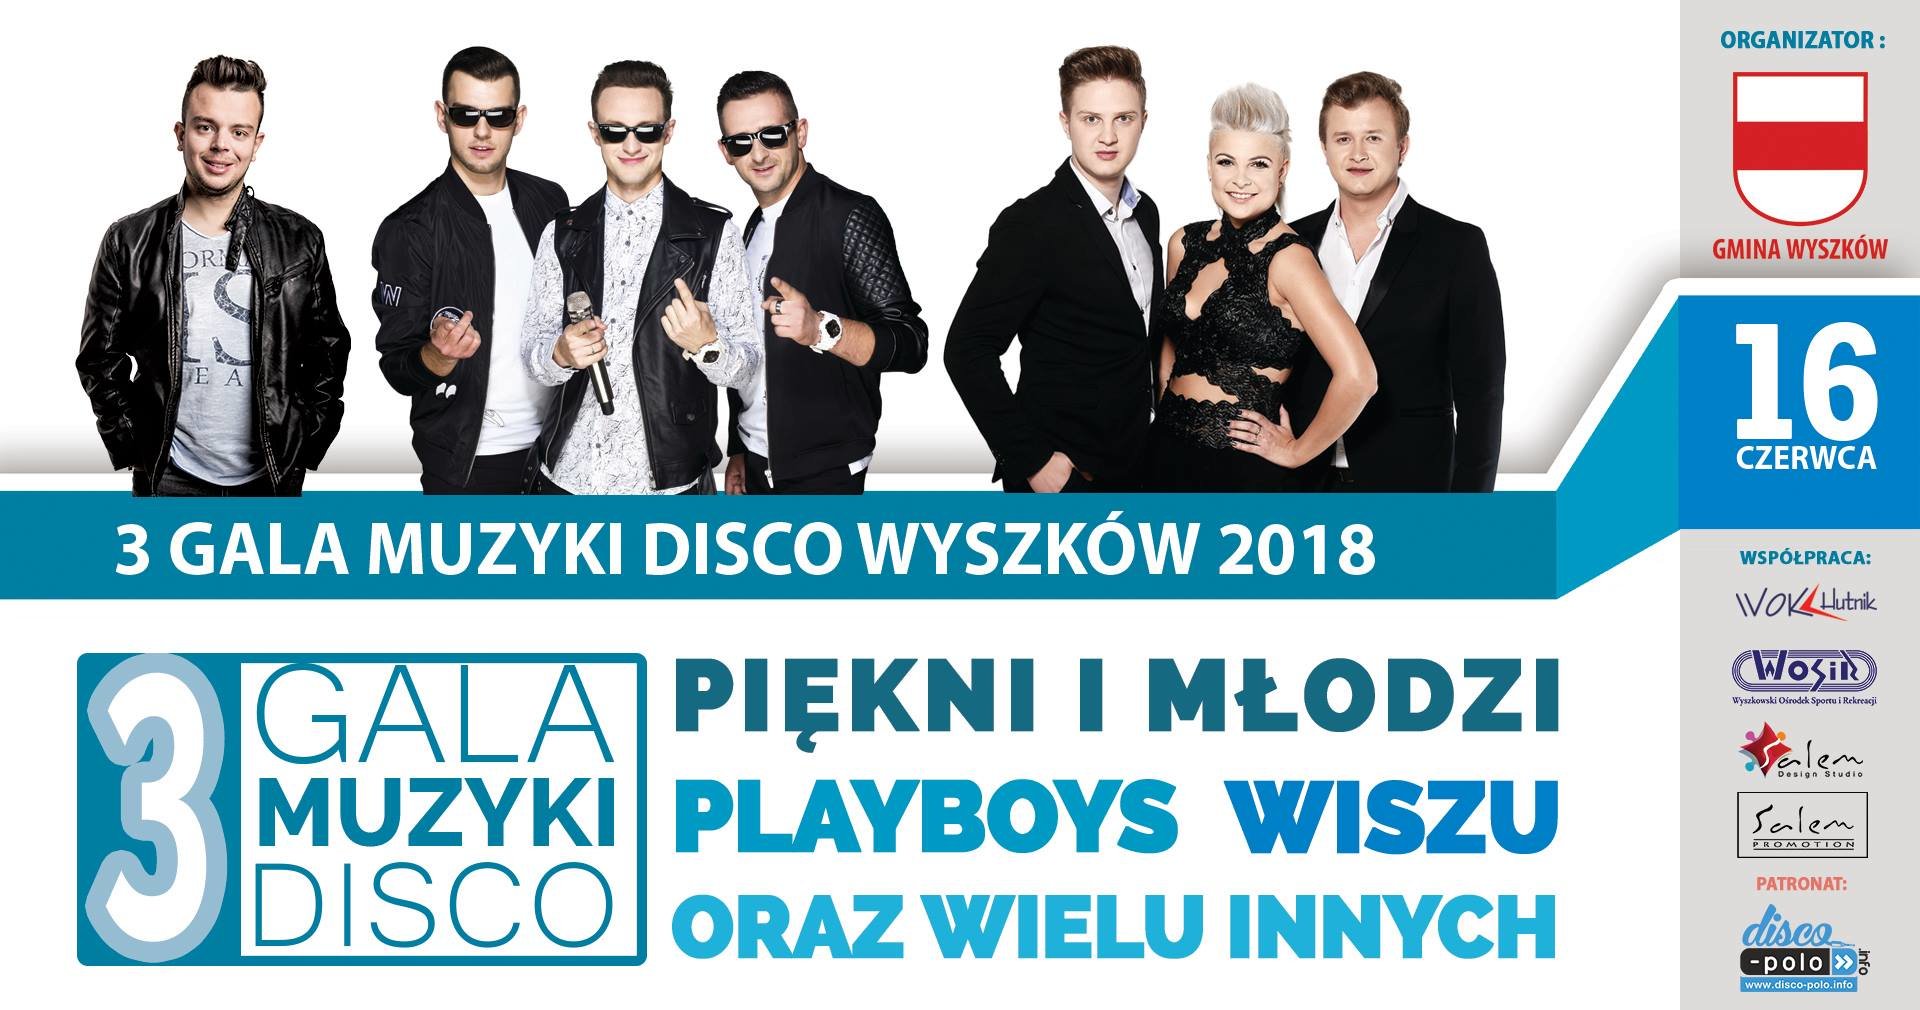  Gala Muzyki Disco – Wyszków 2018 - Zgłoś się do castingu